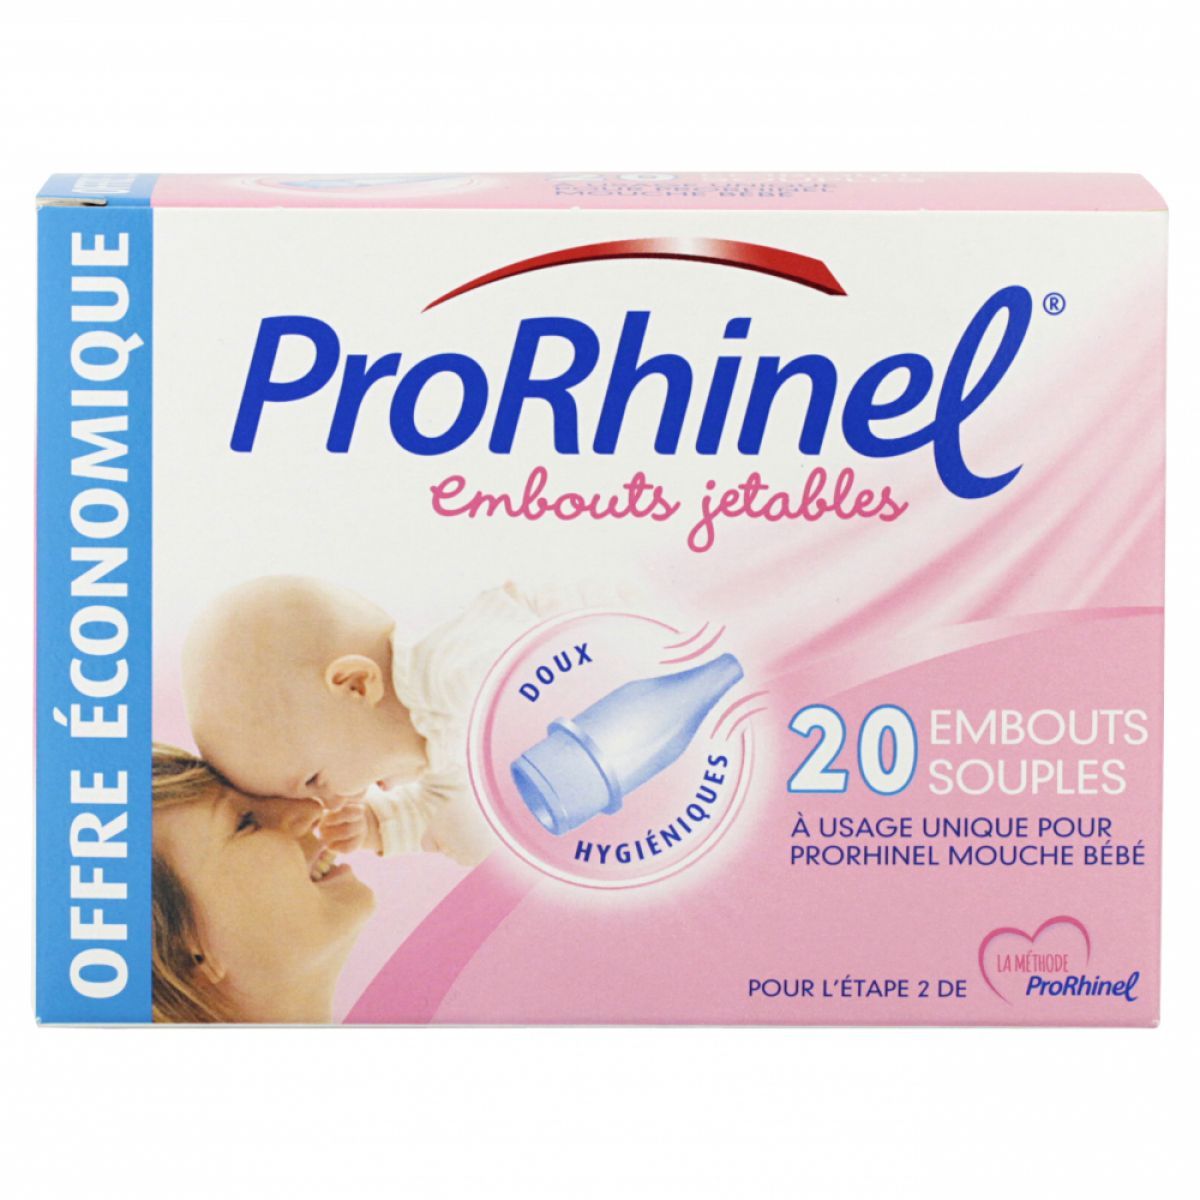 Prorhinel Embouts jetables souples x 20 - Pharmacie du Clos Bernadette